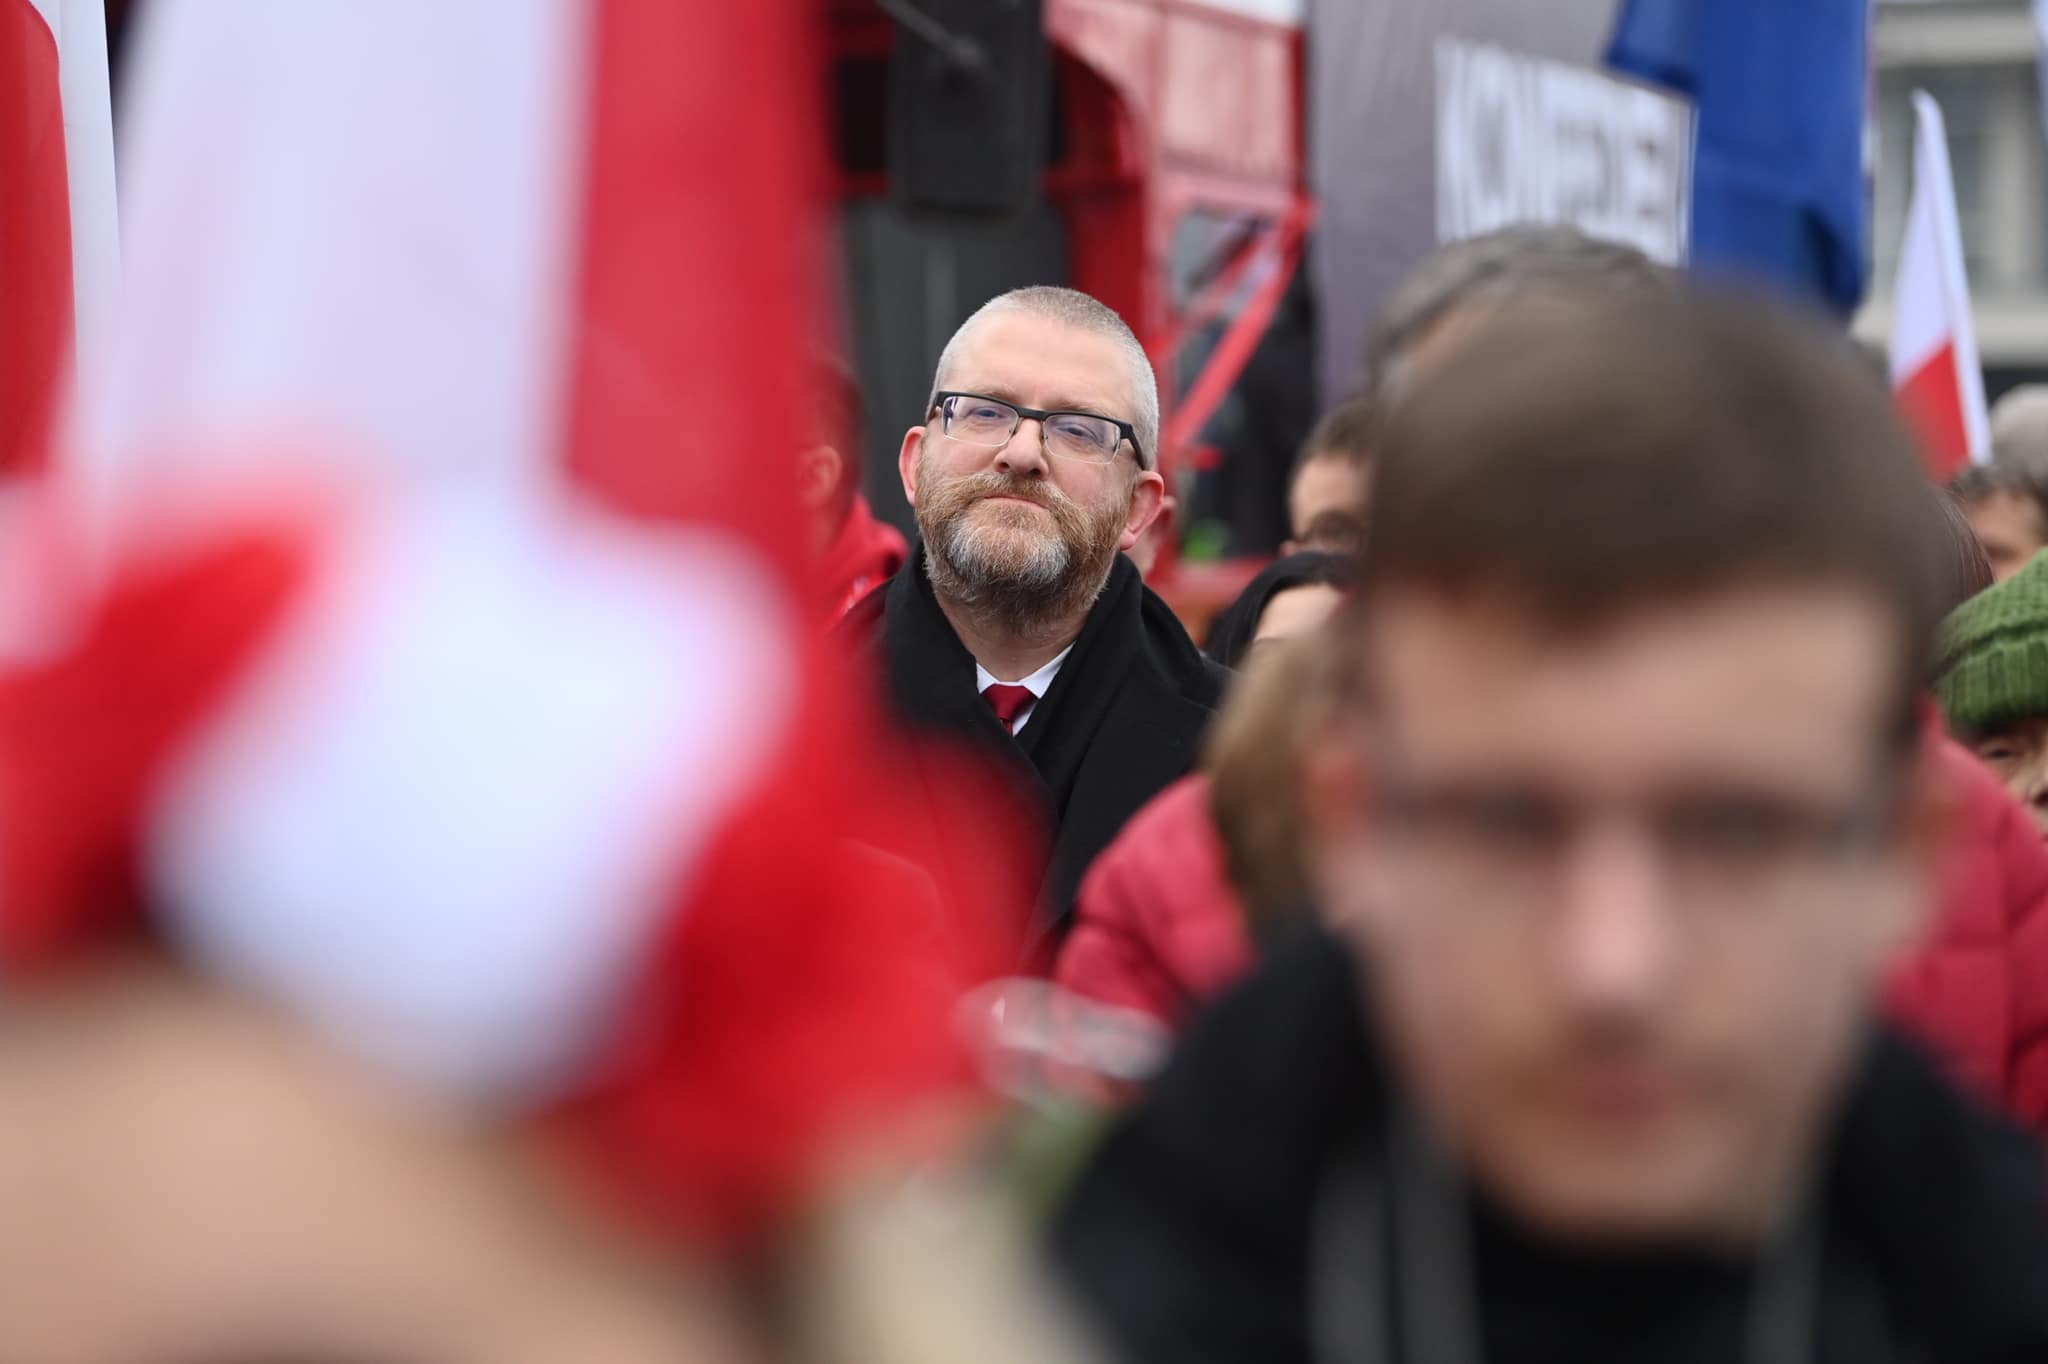 marsz niepodległości po raz 14 przeszedł ulicami warszawy! żeby polska była pols...